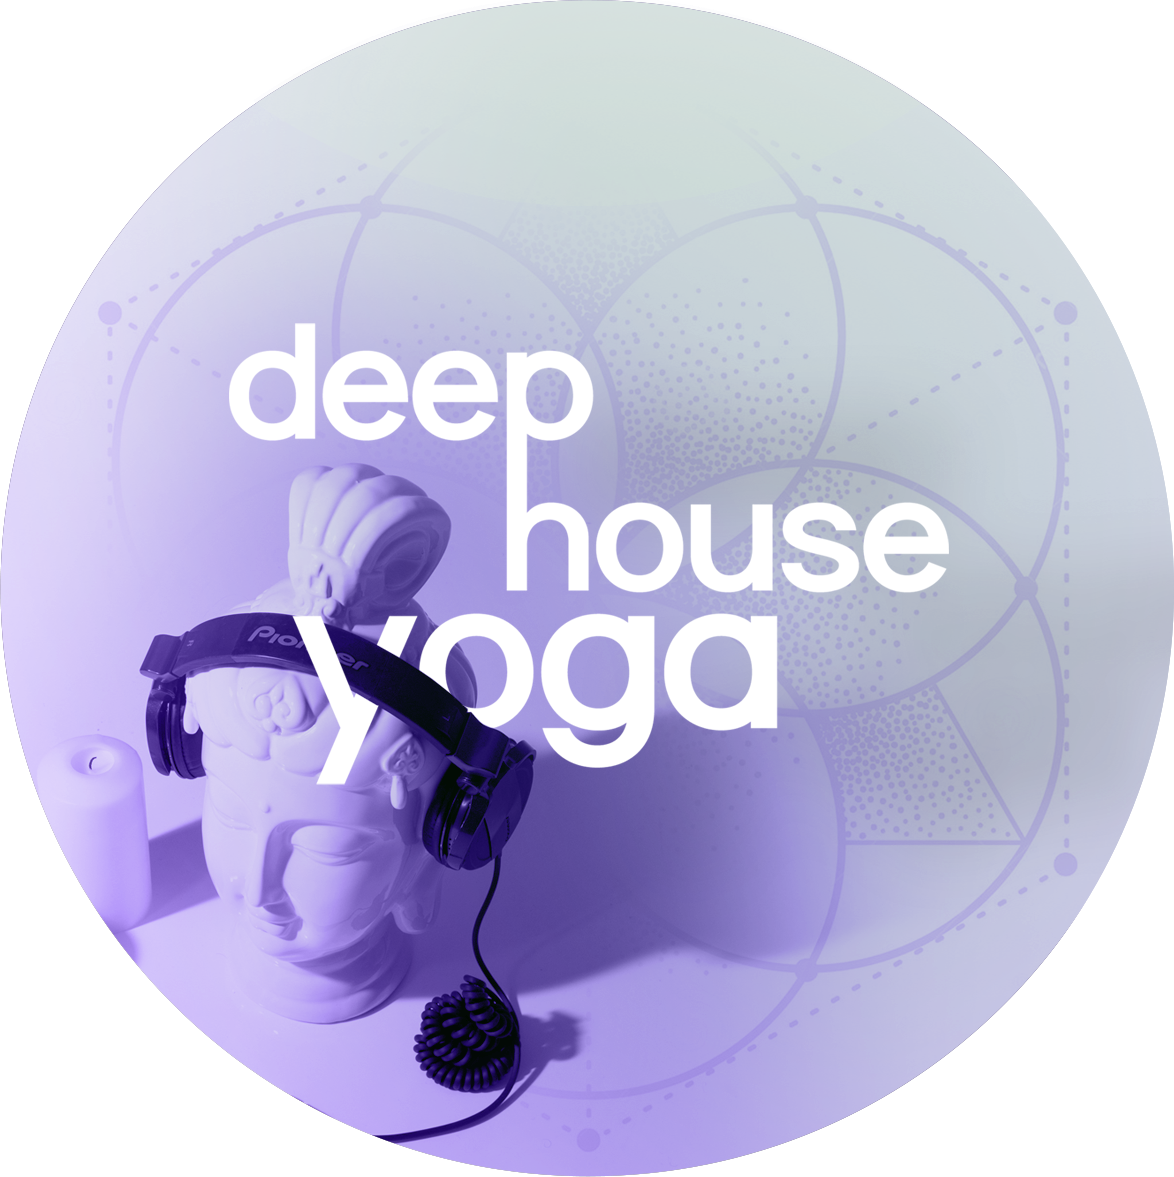 Deep House Yoga